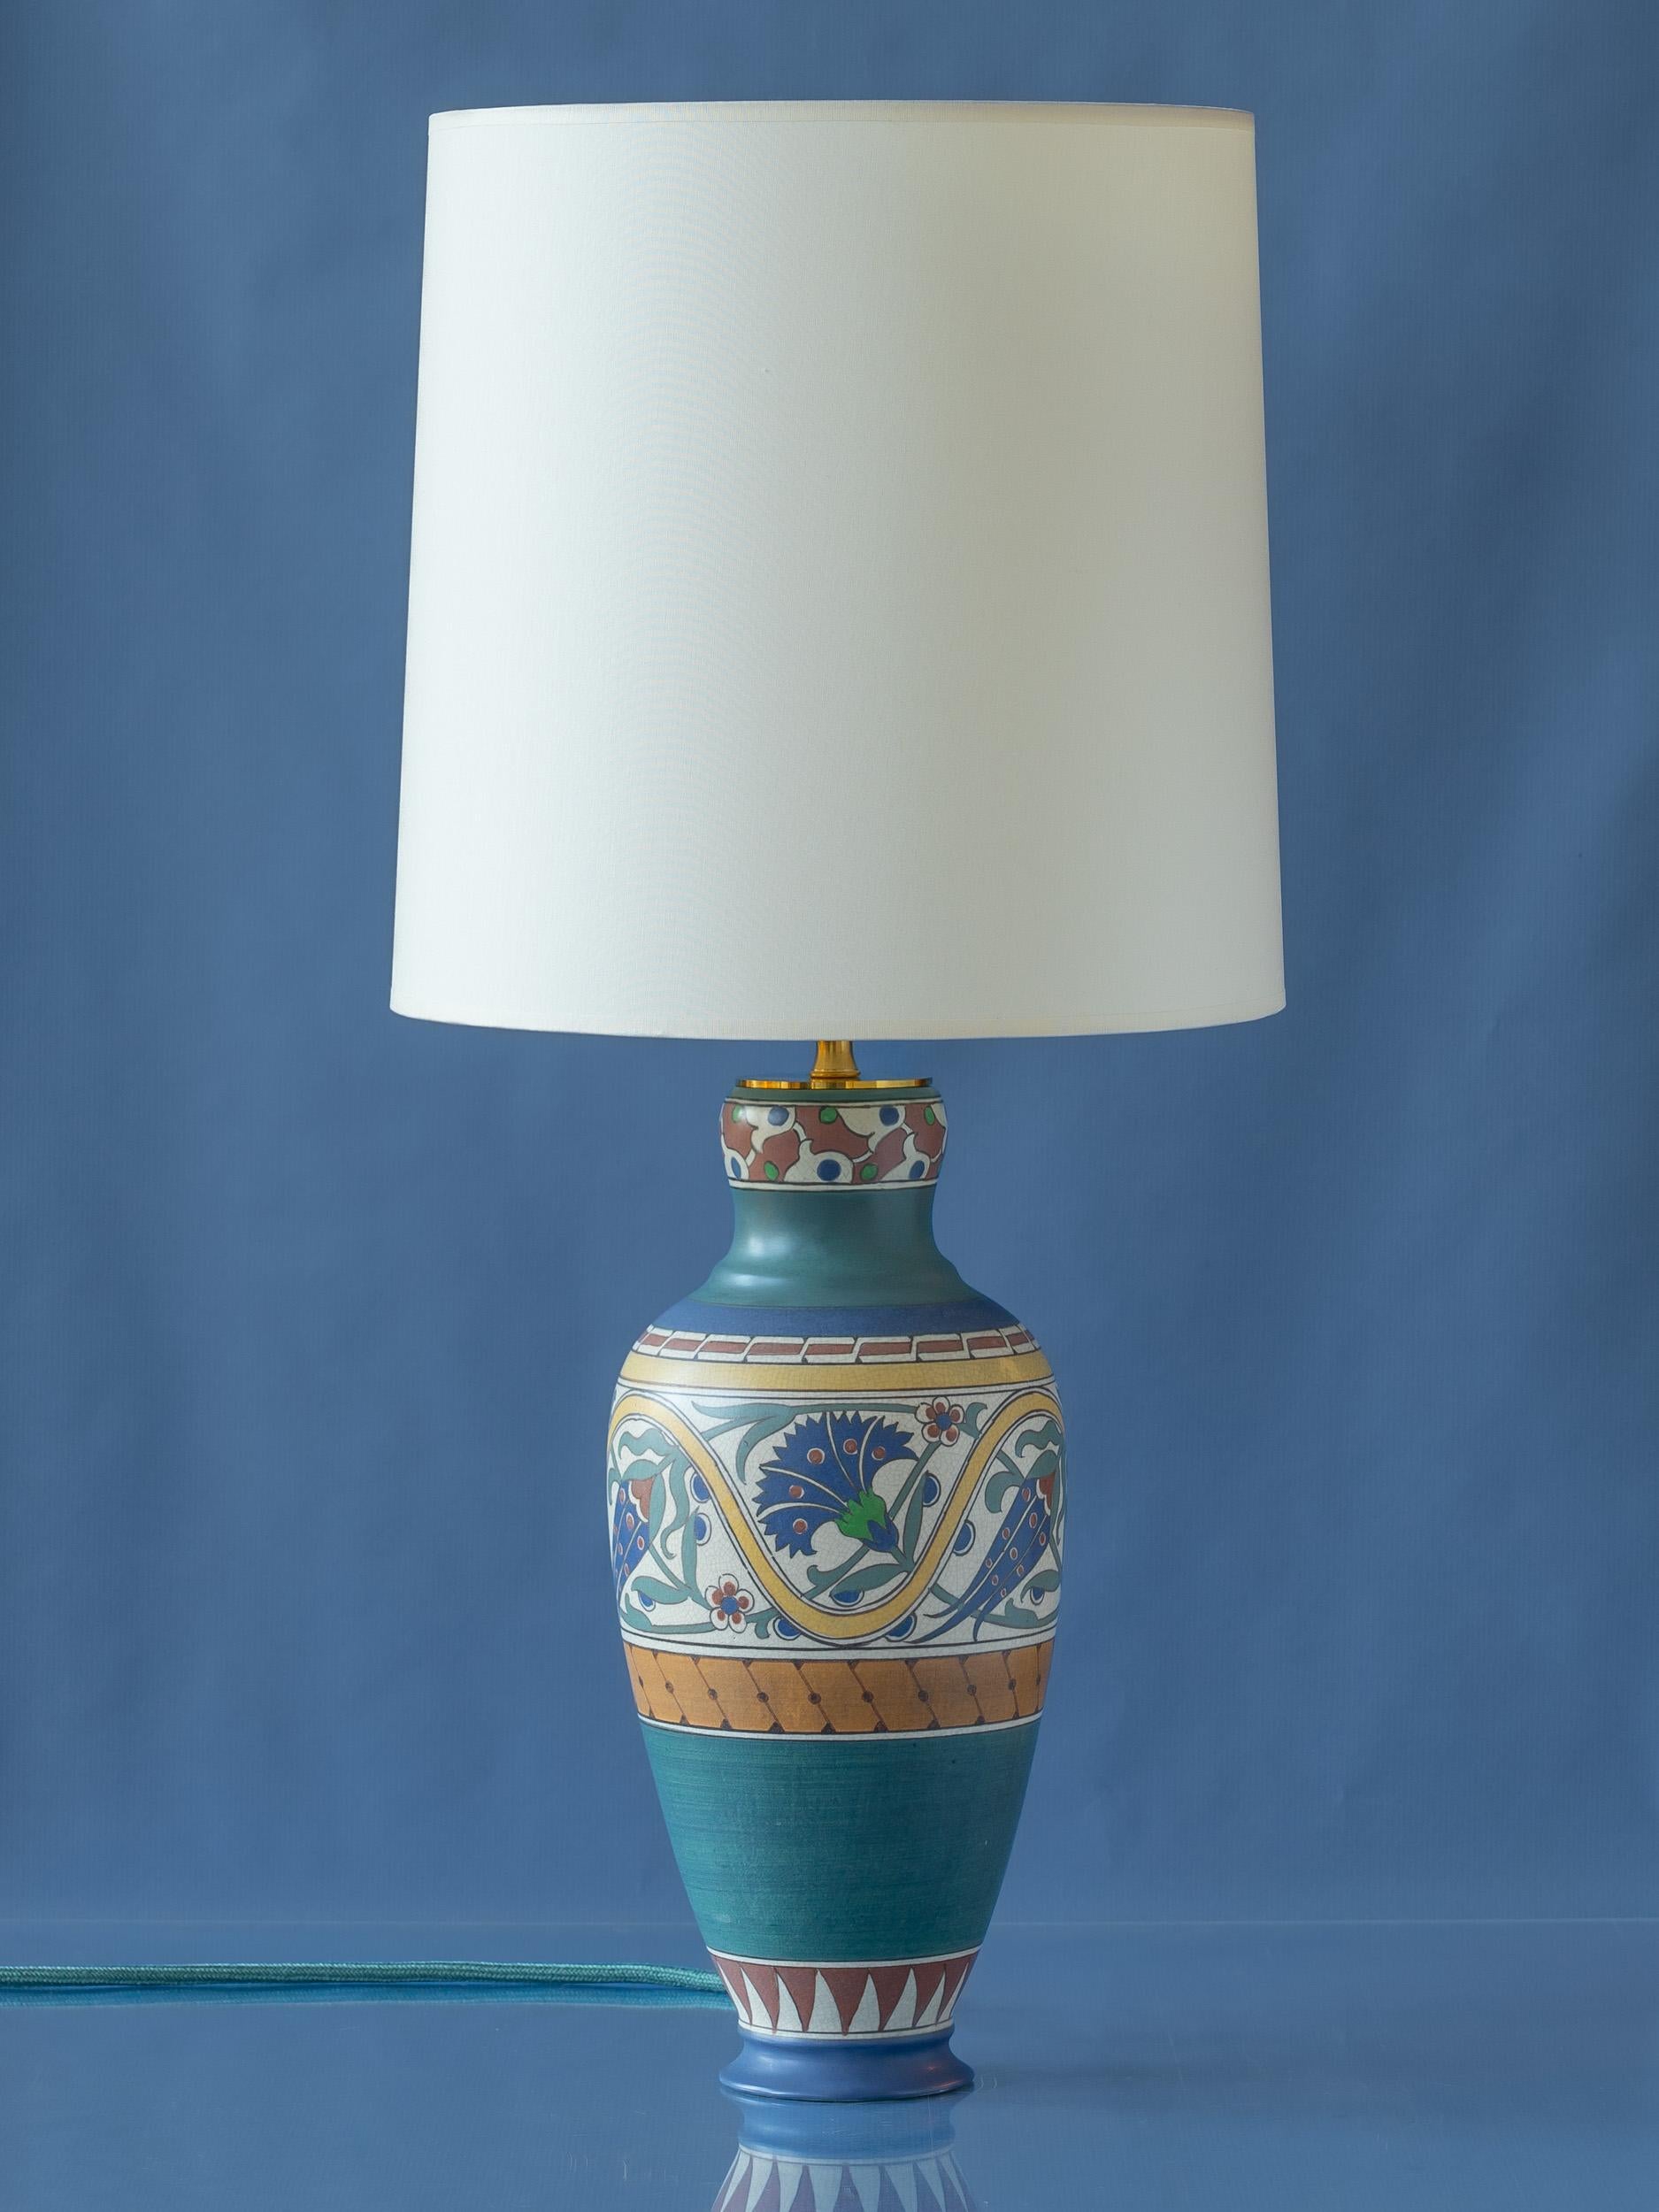 Voici Lindus ! Une lampe unique, fabriquée à la main avec amour à partir d'un vase ancien et rare de la célèbre Arnhemsche Fayencefabriek. Ce vase, qui forme la base de la lampe, est un témoignage de l'art superbe du passé. Il présente une glaçure